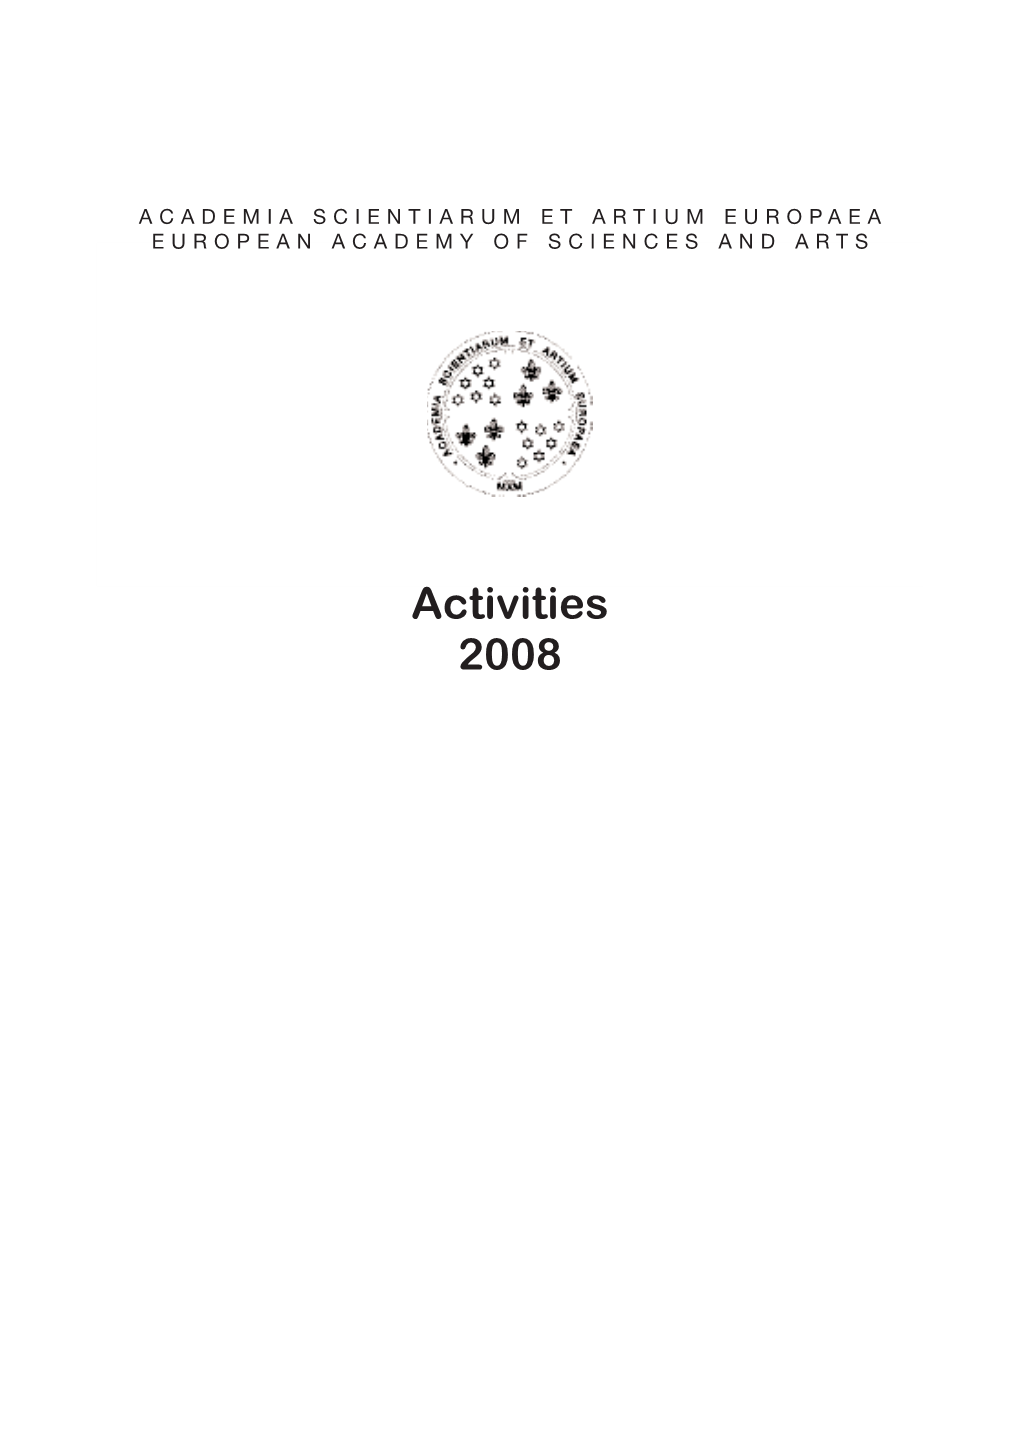 Activities 2008 ACTIVITIES 2008